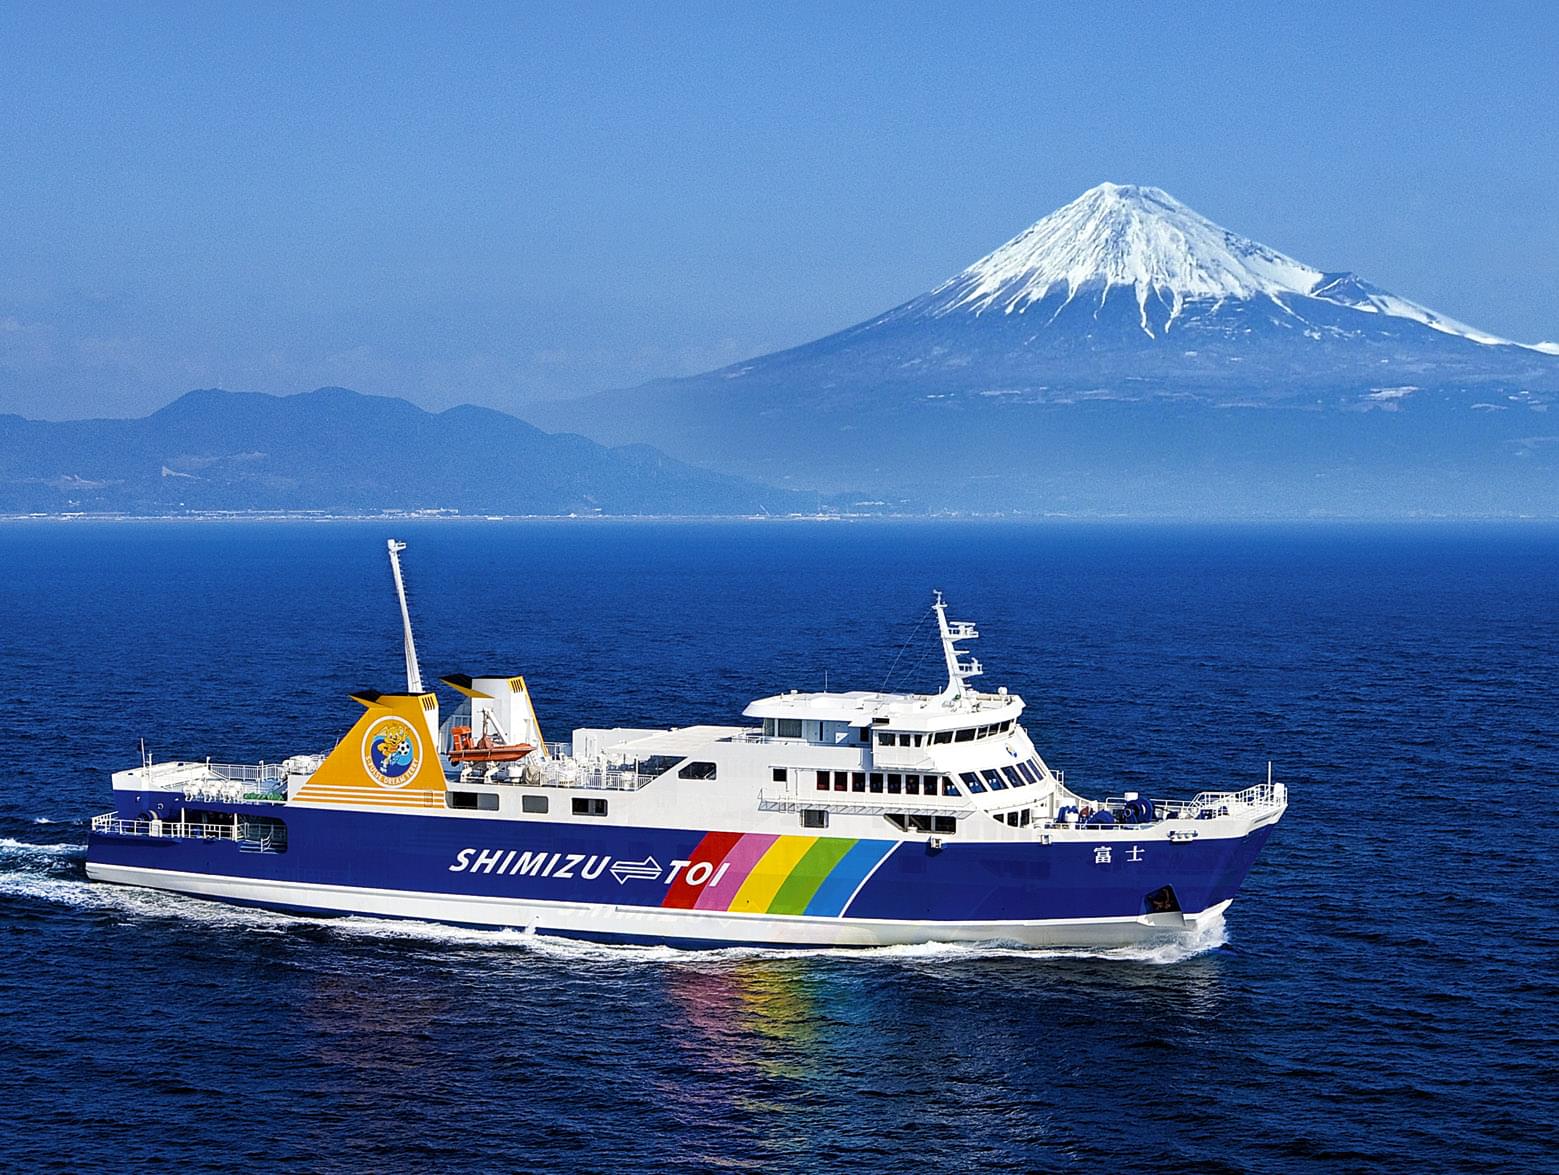 静岡一人旅のおすすめ観光スポット15選~富士山もグルメもパワースポットも楽しもう~